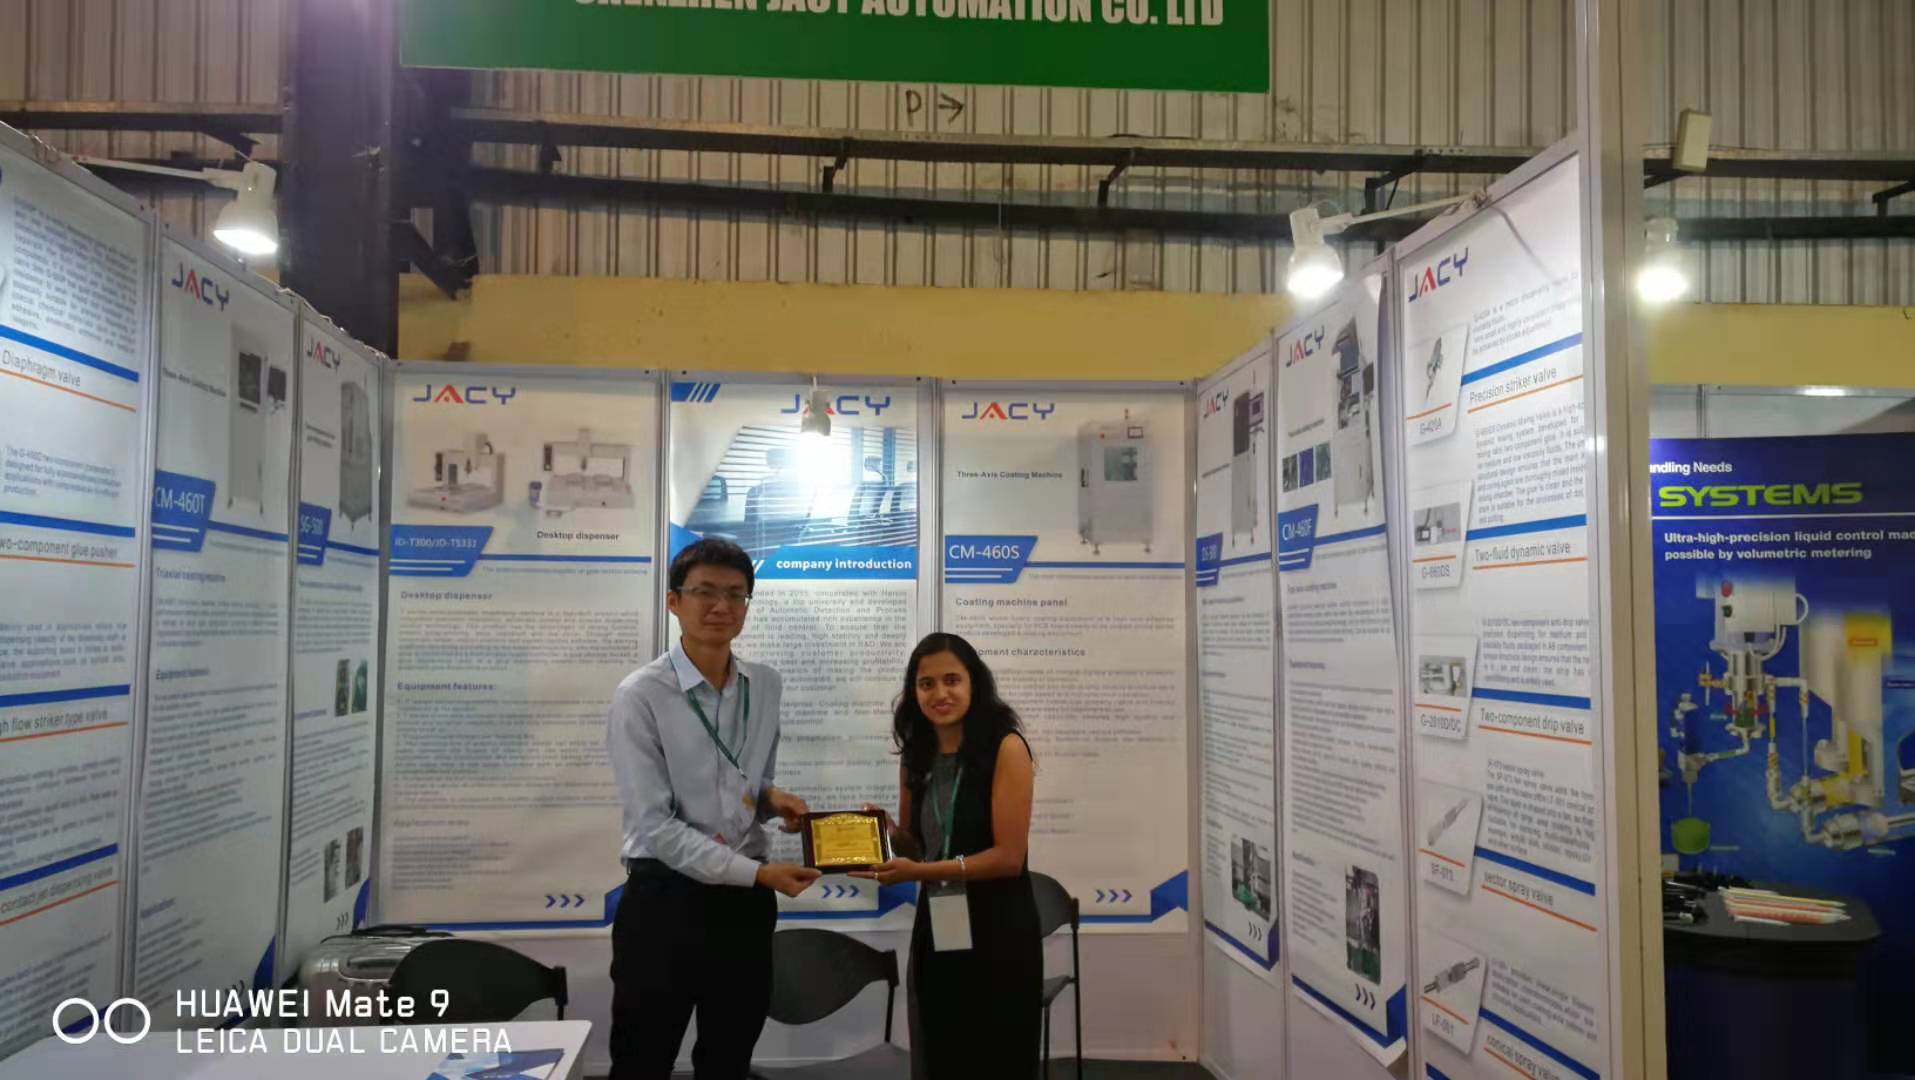   被授予“首届关于制造材料和分配技术研究展览的赞赏”荣誉证书。